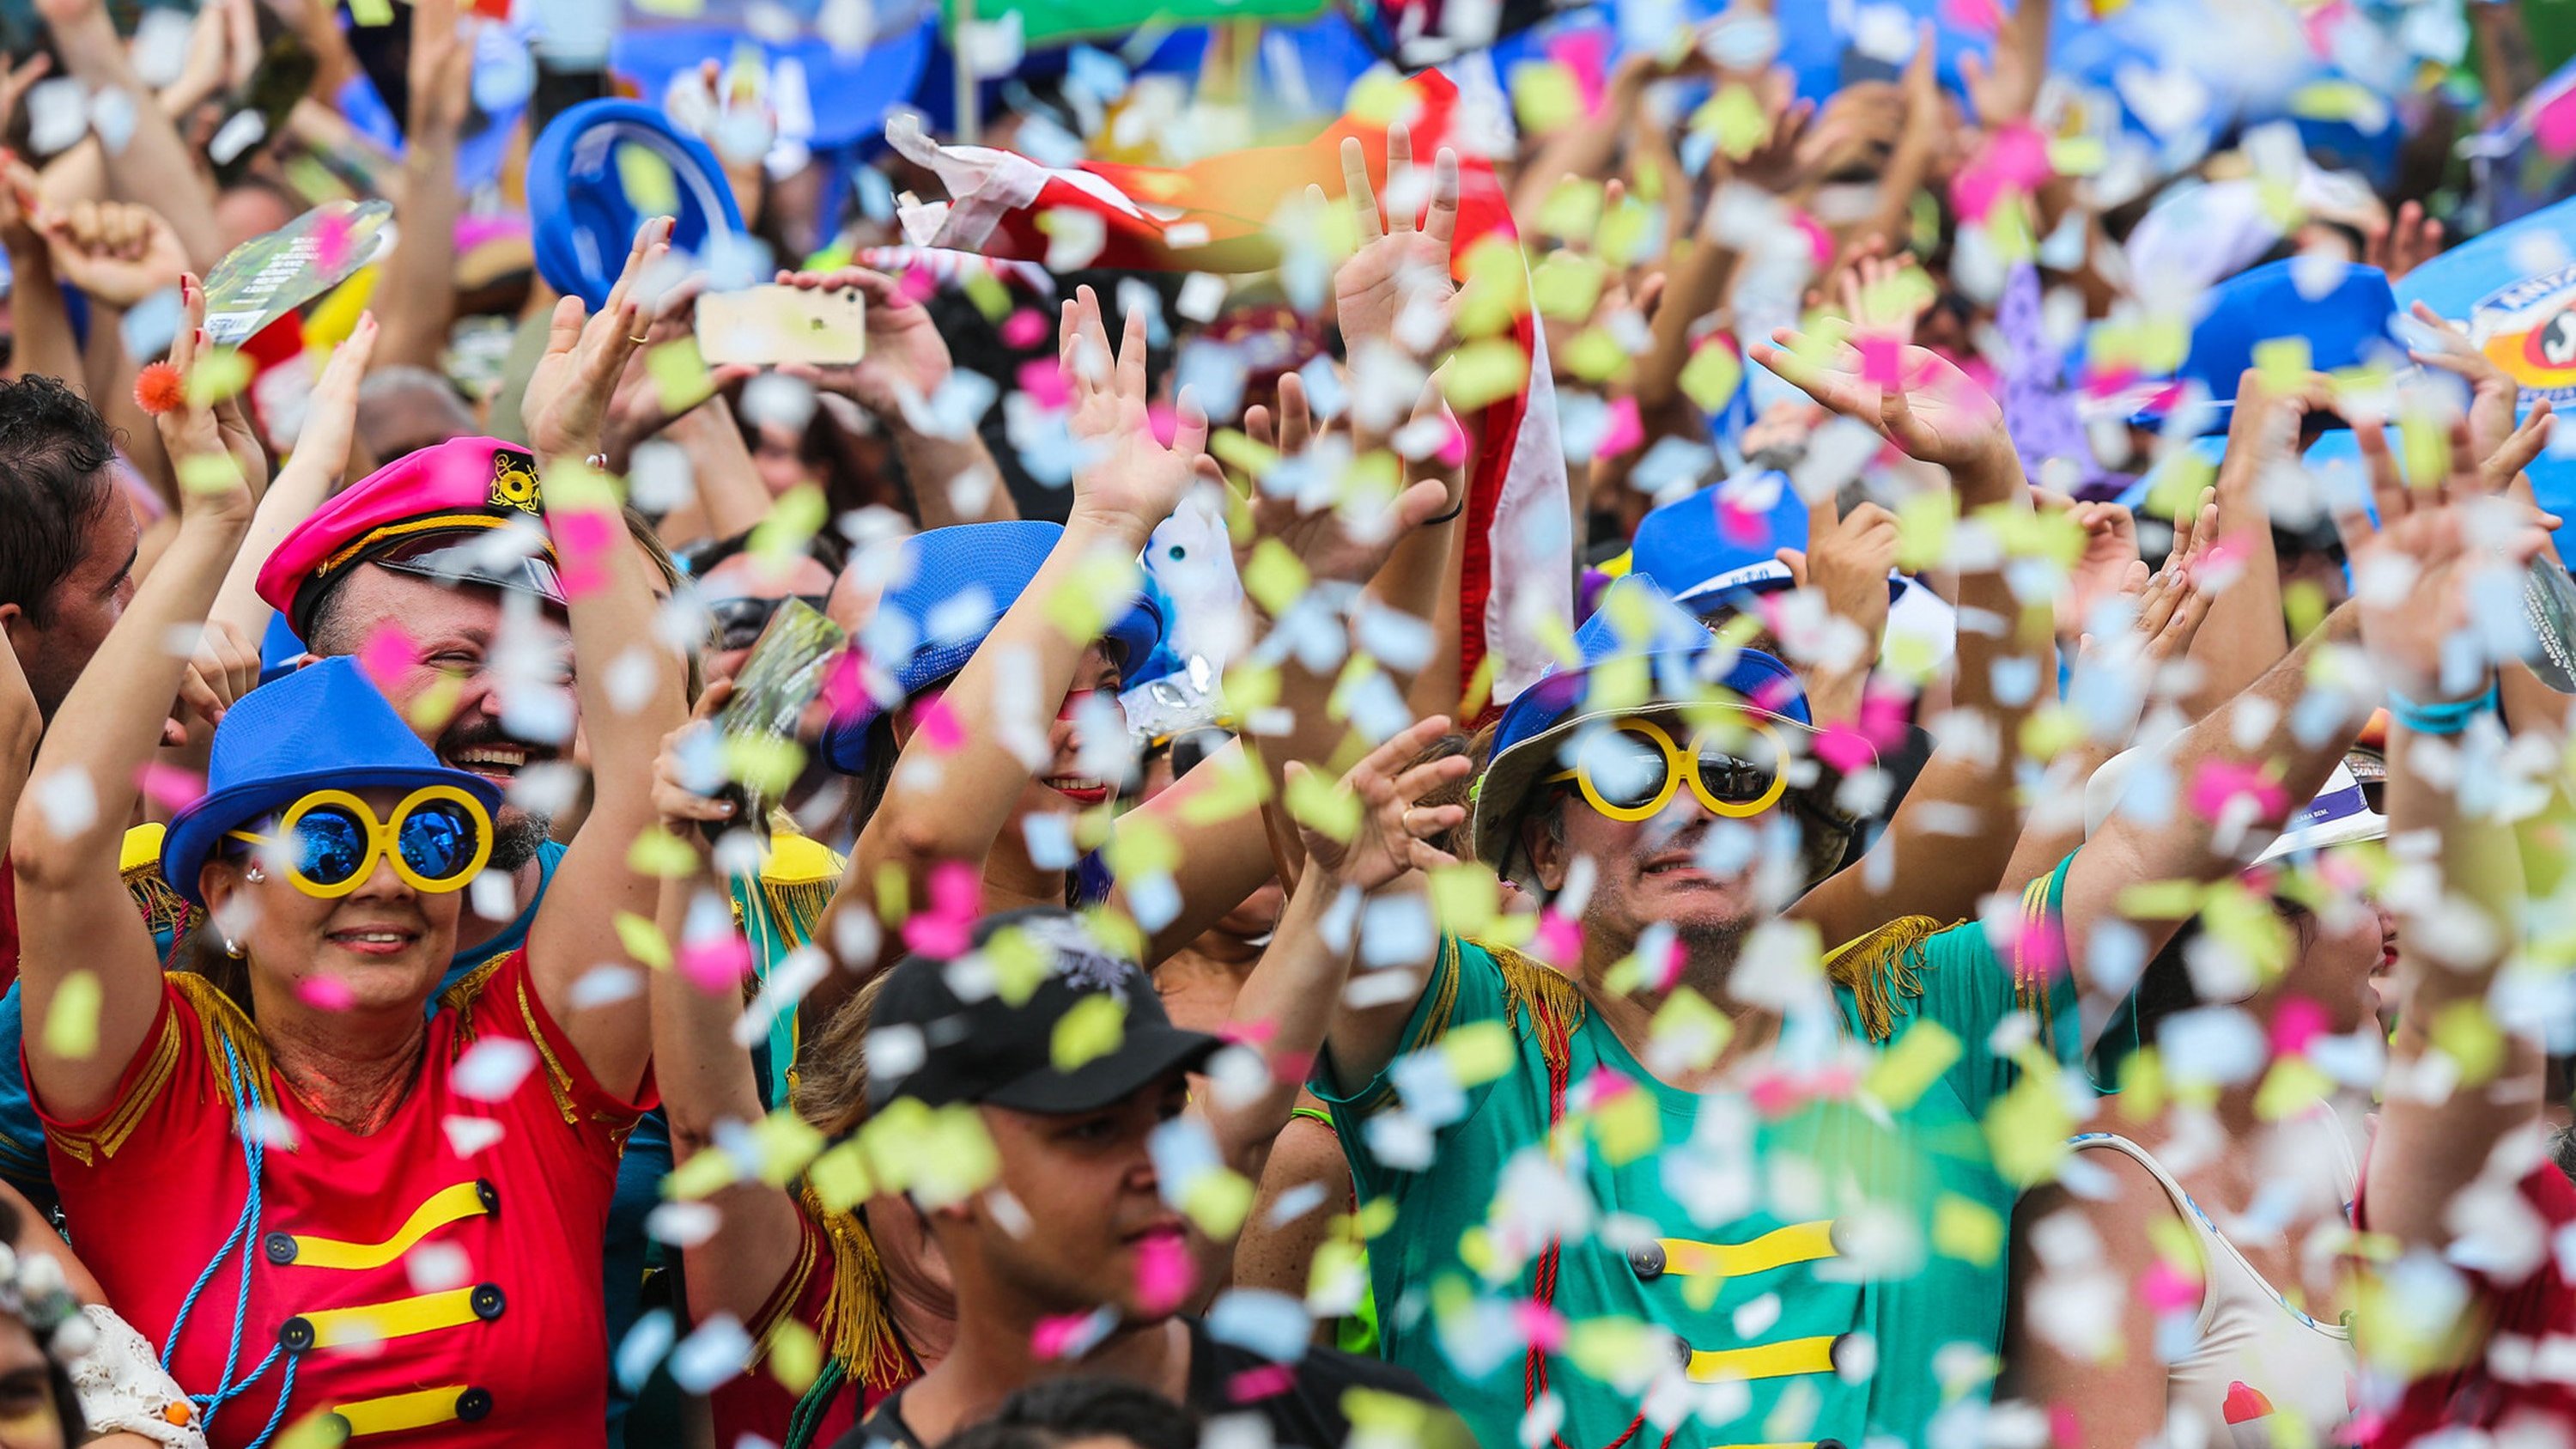 Pessoas comemorando o Carnaval em bloco, com fantasias e confete.